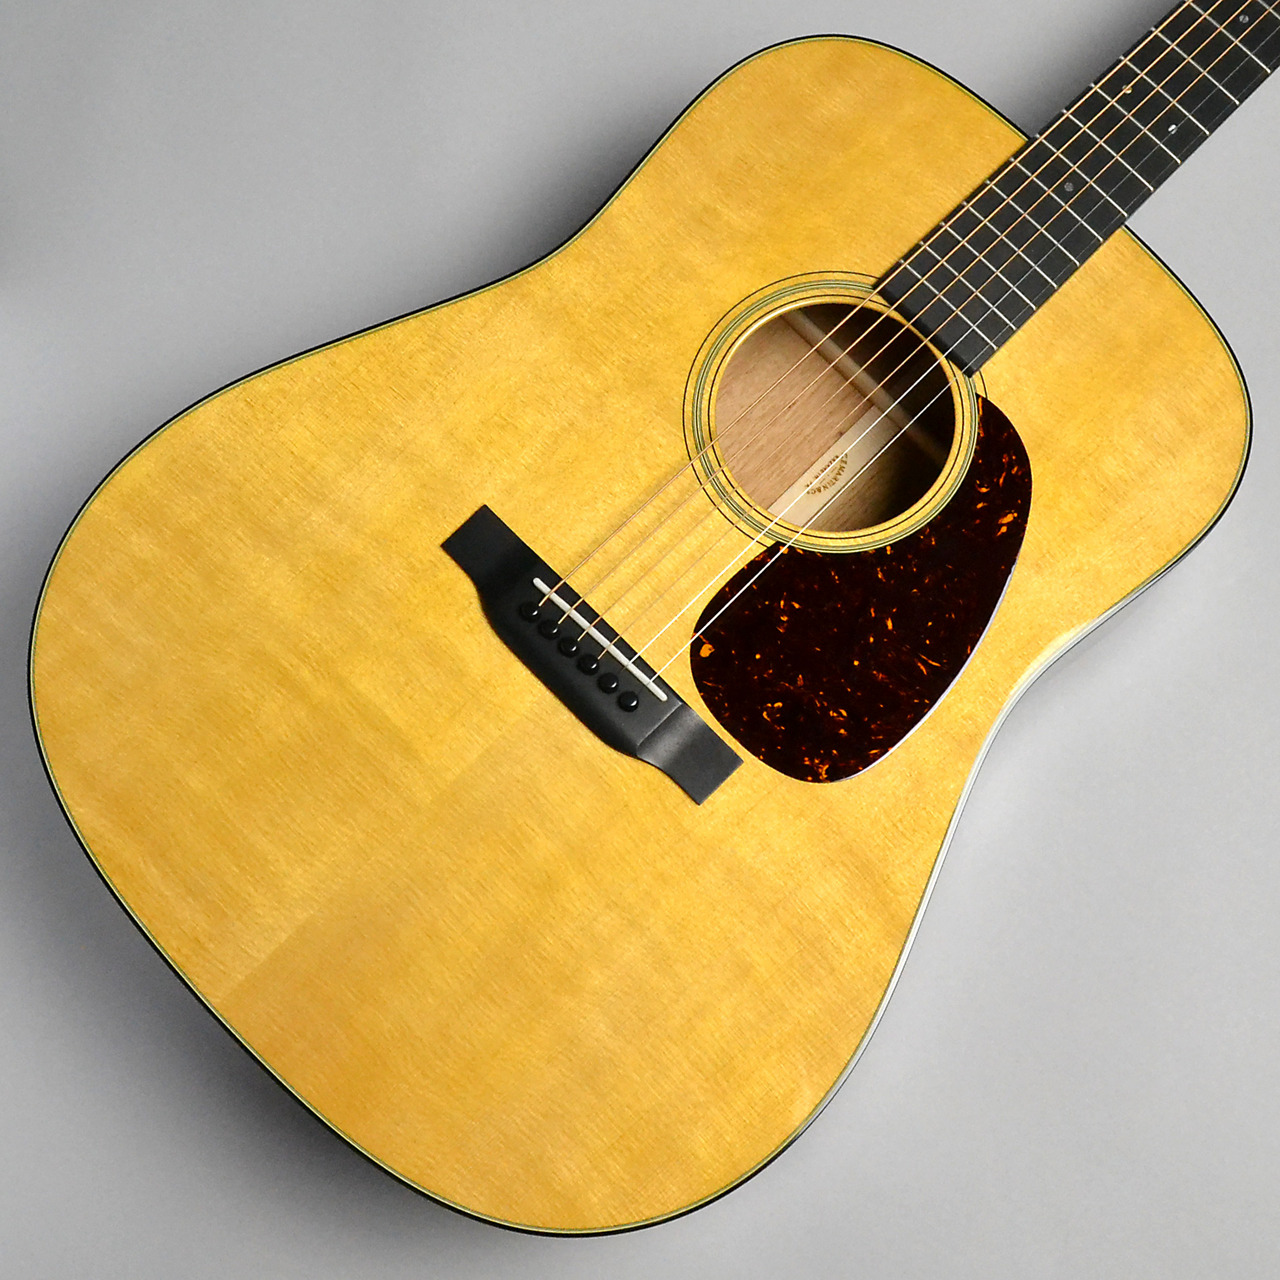 アコースティックギター【Martin】D-18 standard